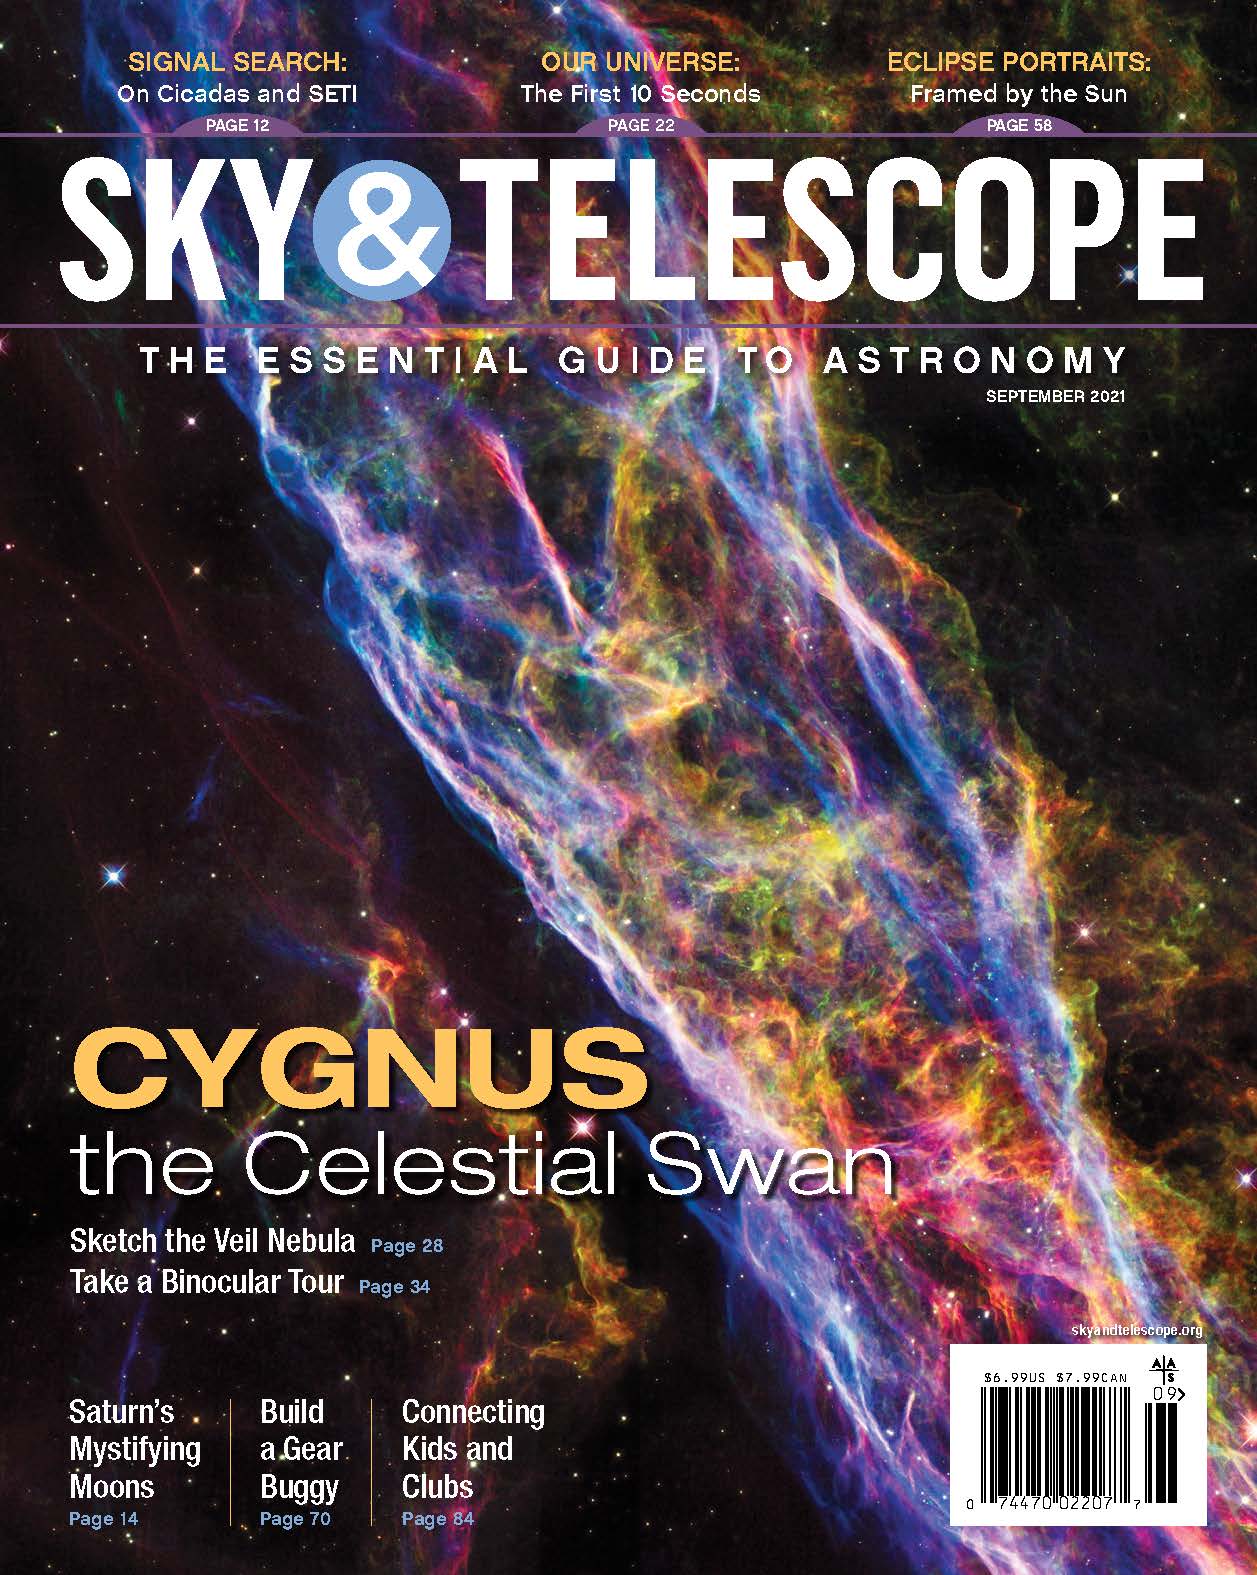 clouds-on-olympus-darryl-archer-sky-telescope-sky-telescope